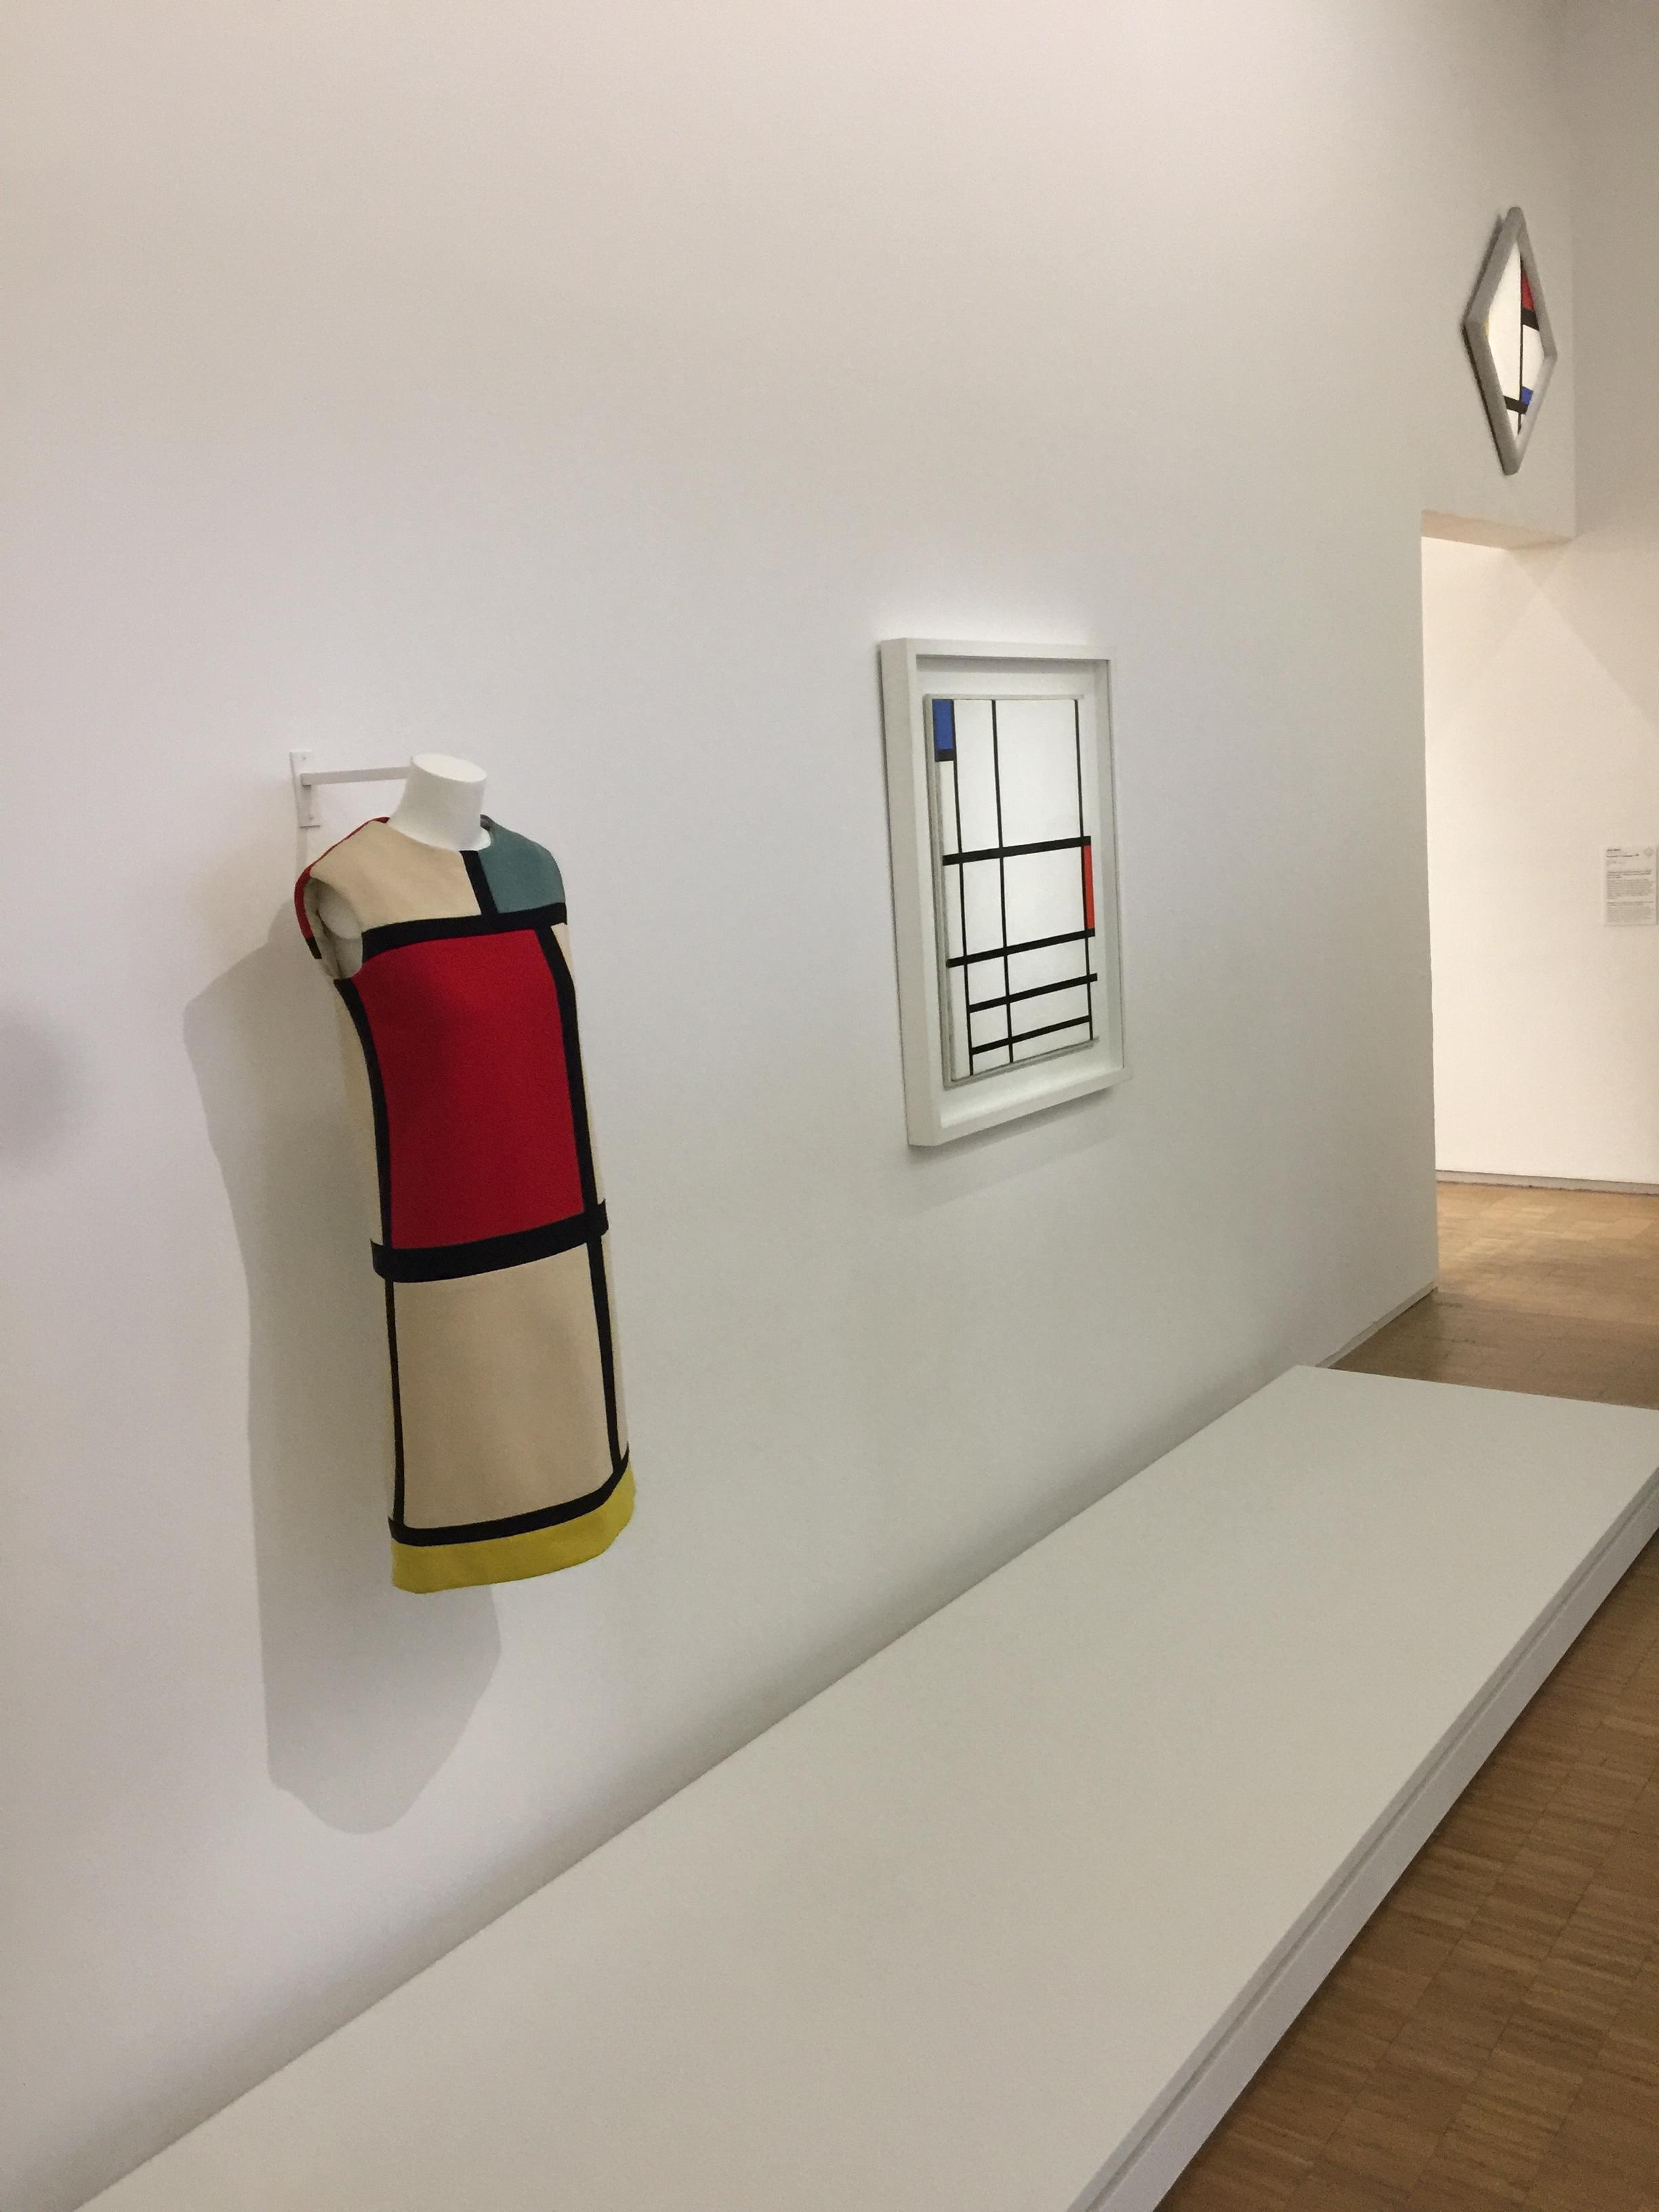 Visuel : Les élèves de 1ère spécialité Arts plastiques au Centre Pompidou